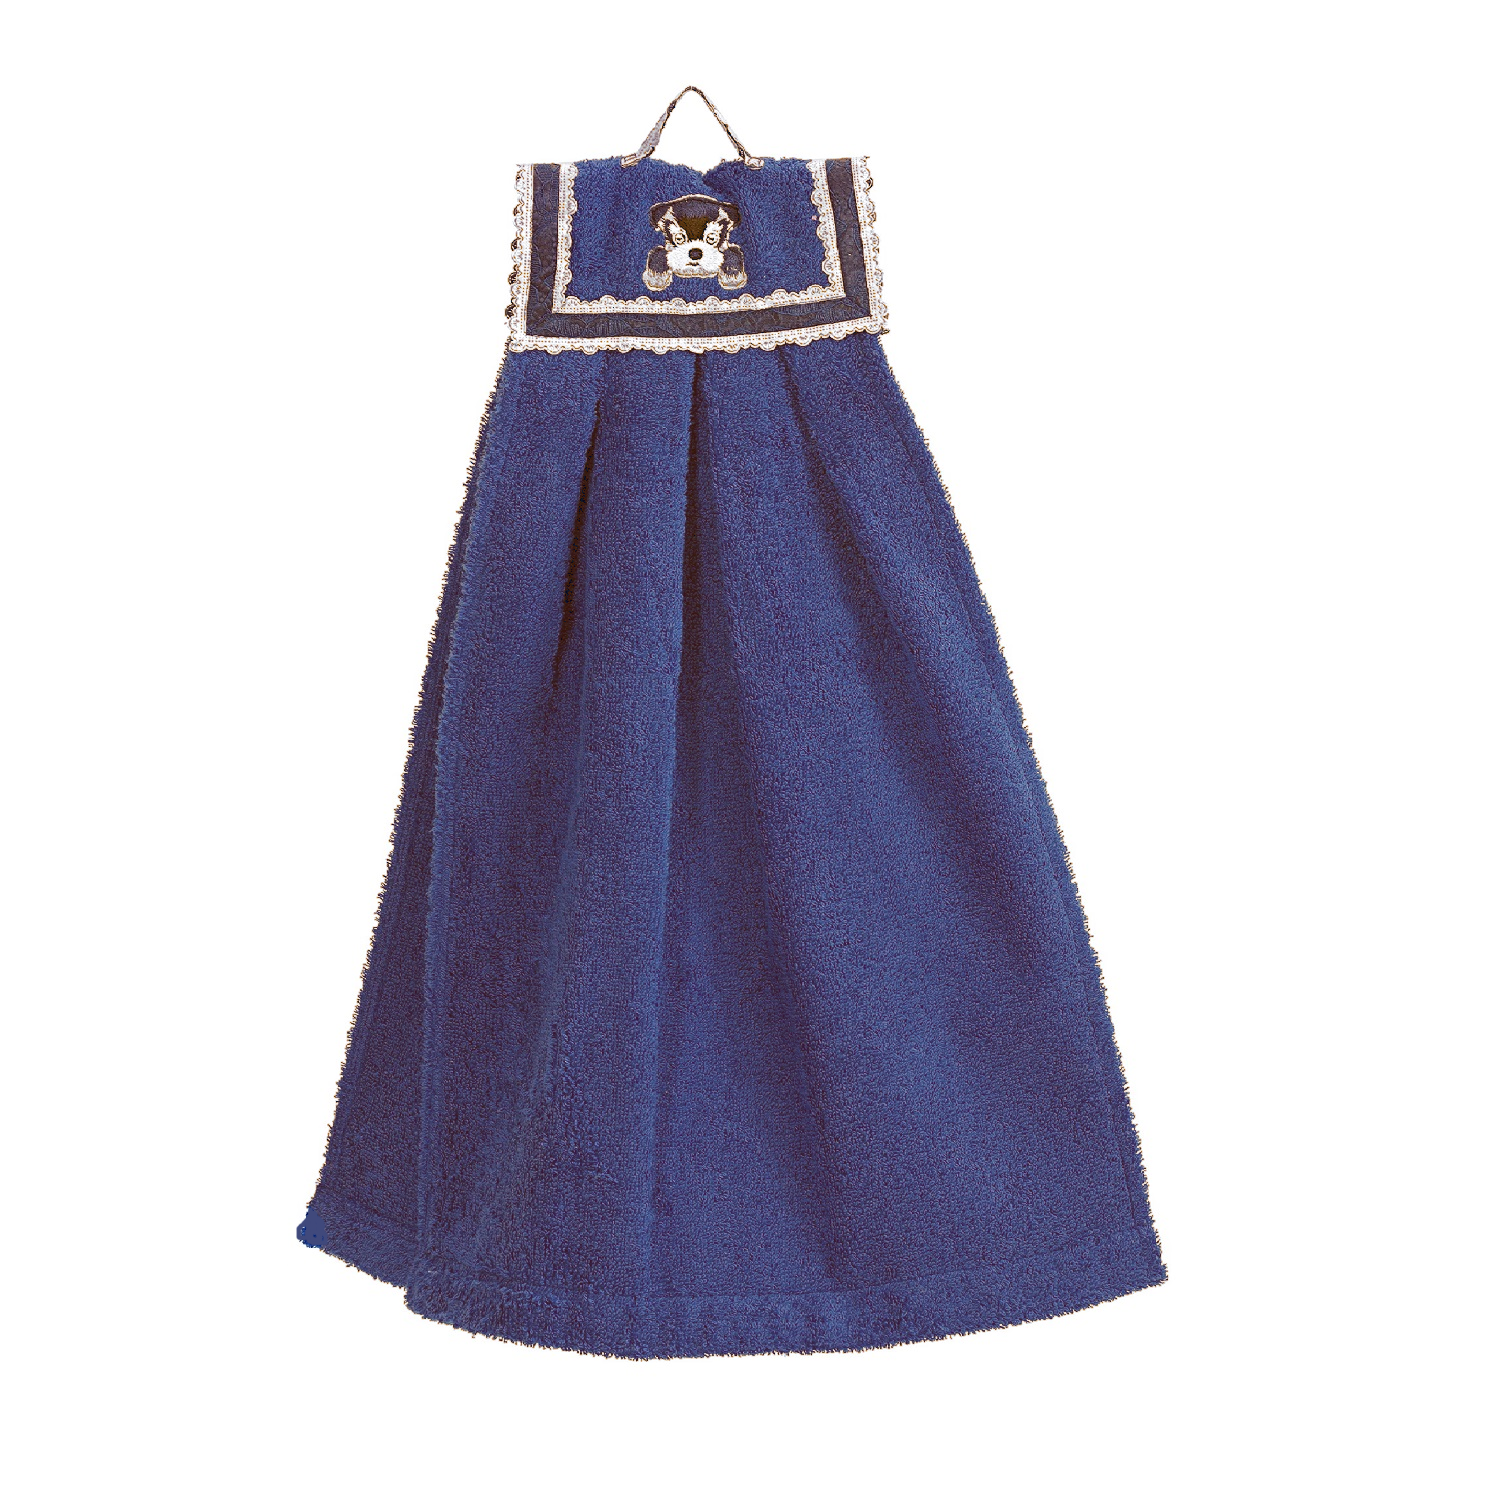 Полотенце Forsalon детское махровое Двойняшка цвет синий приглушенный - фото 1